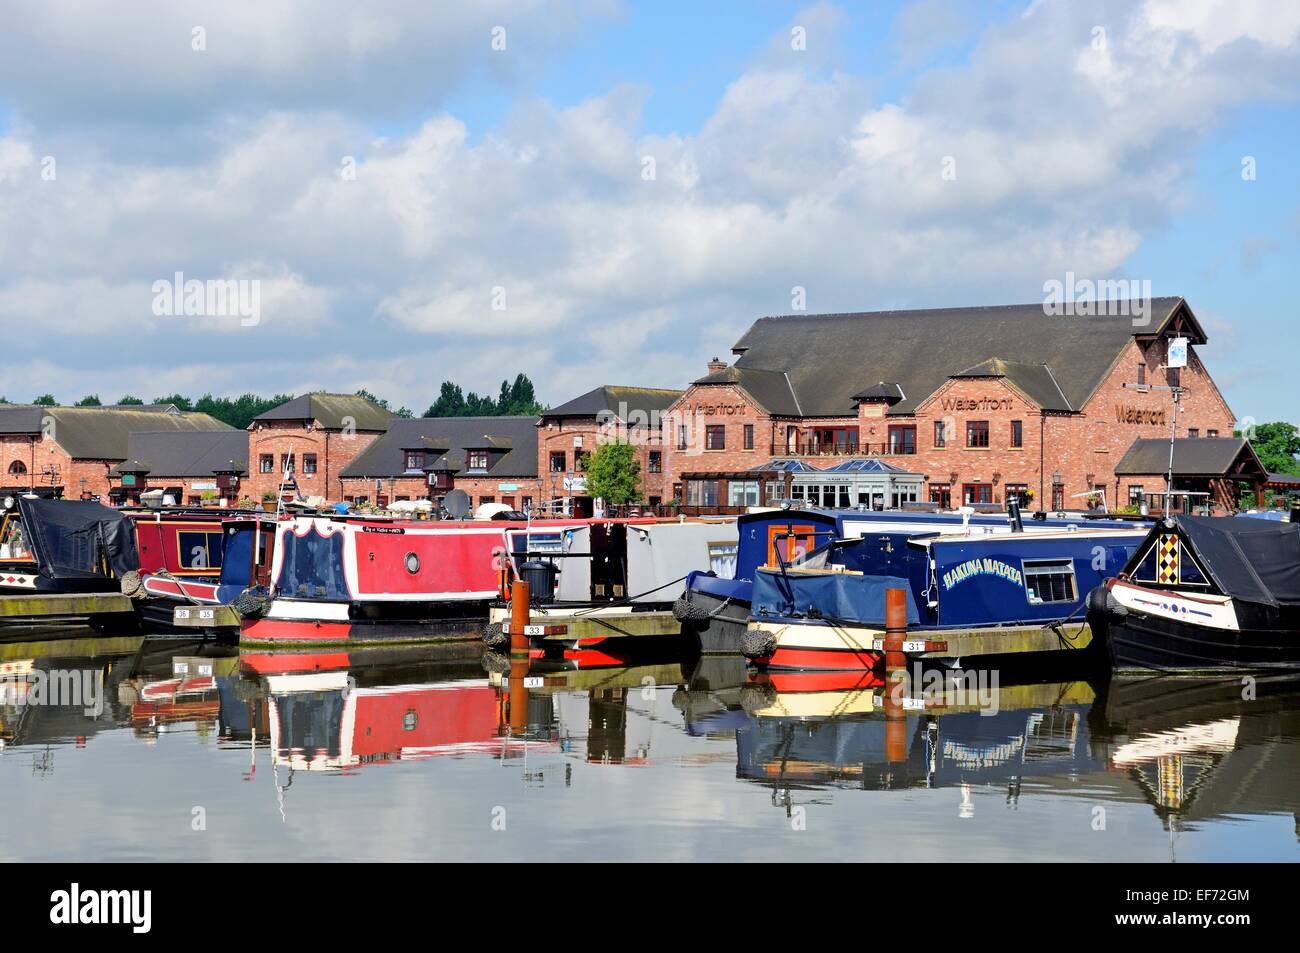 Narrowboats sur leurs amarres dans le bassin du canal, avec des magasins, bars et restaurants à l'arrière, Barton Marina, England, UK. Banque D'Images